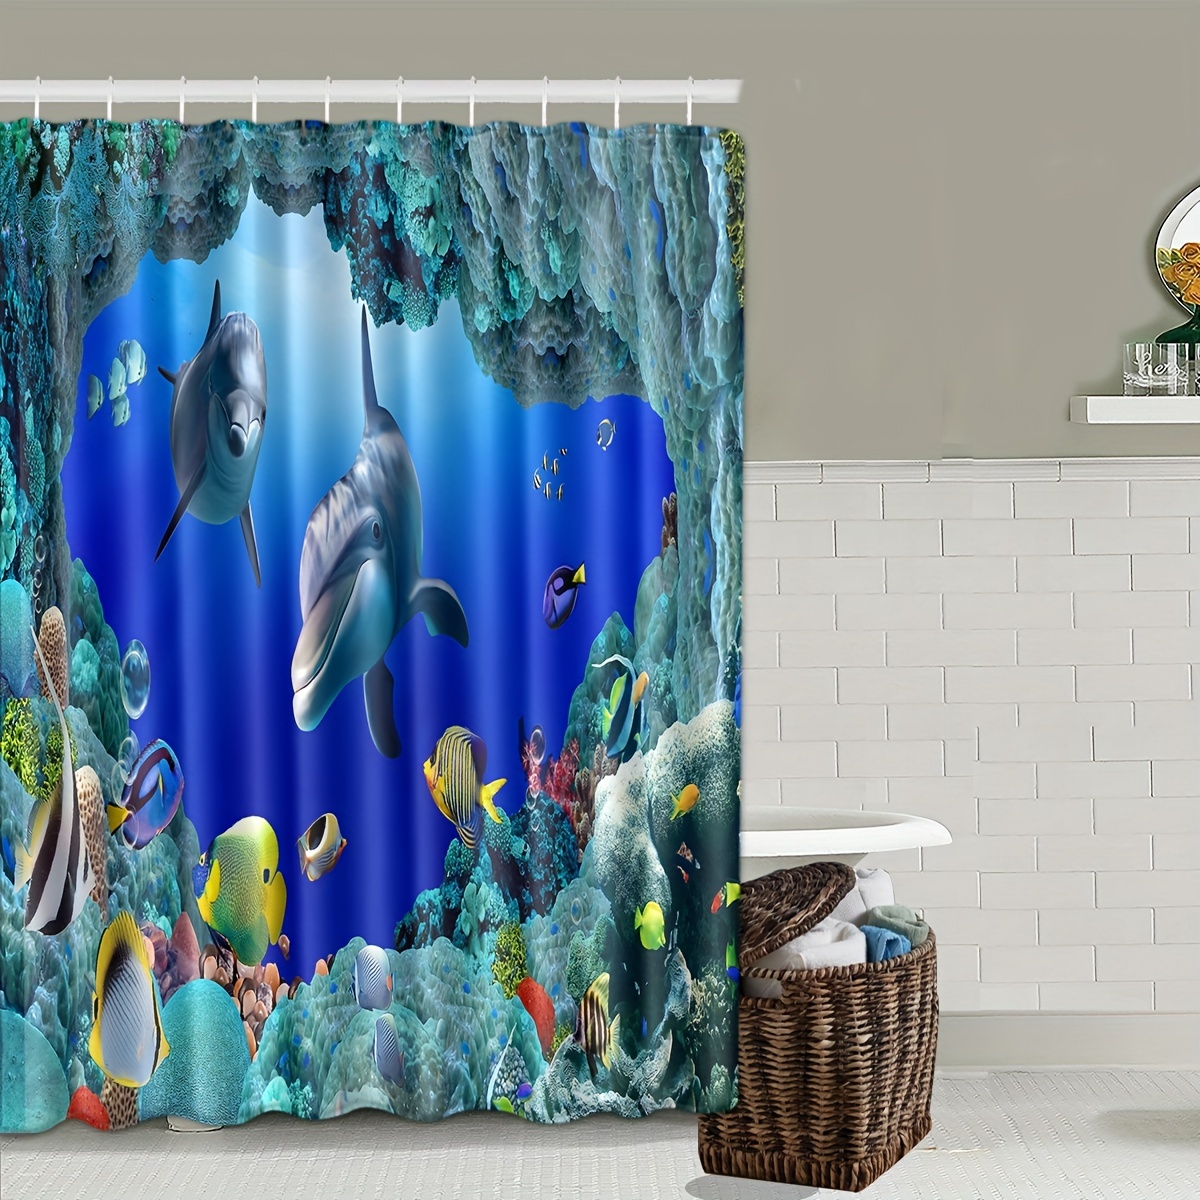 Sea Ocean Aquarium Theme Shower Curtain, Bath Shower Curtain, Waterproof Shower  Curtain With C-shaped Hooks 